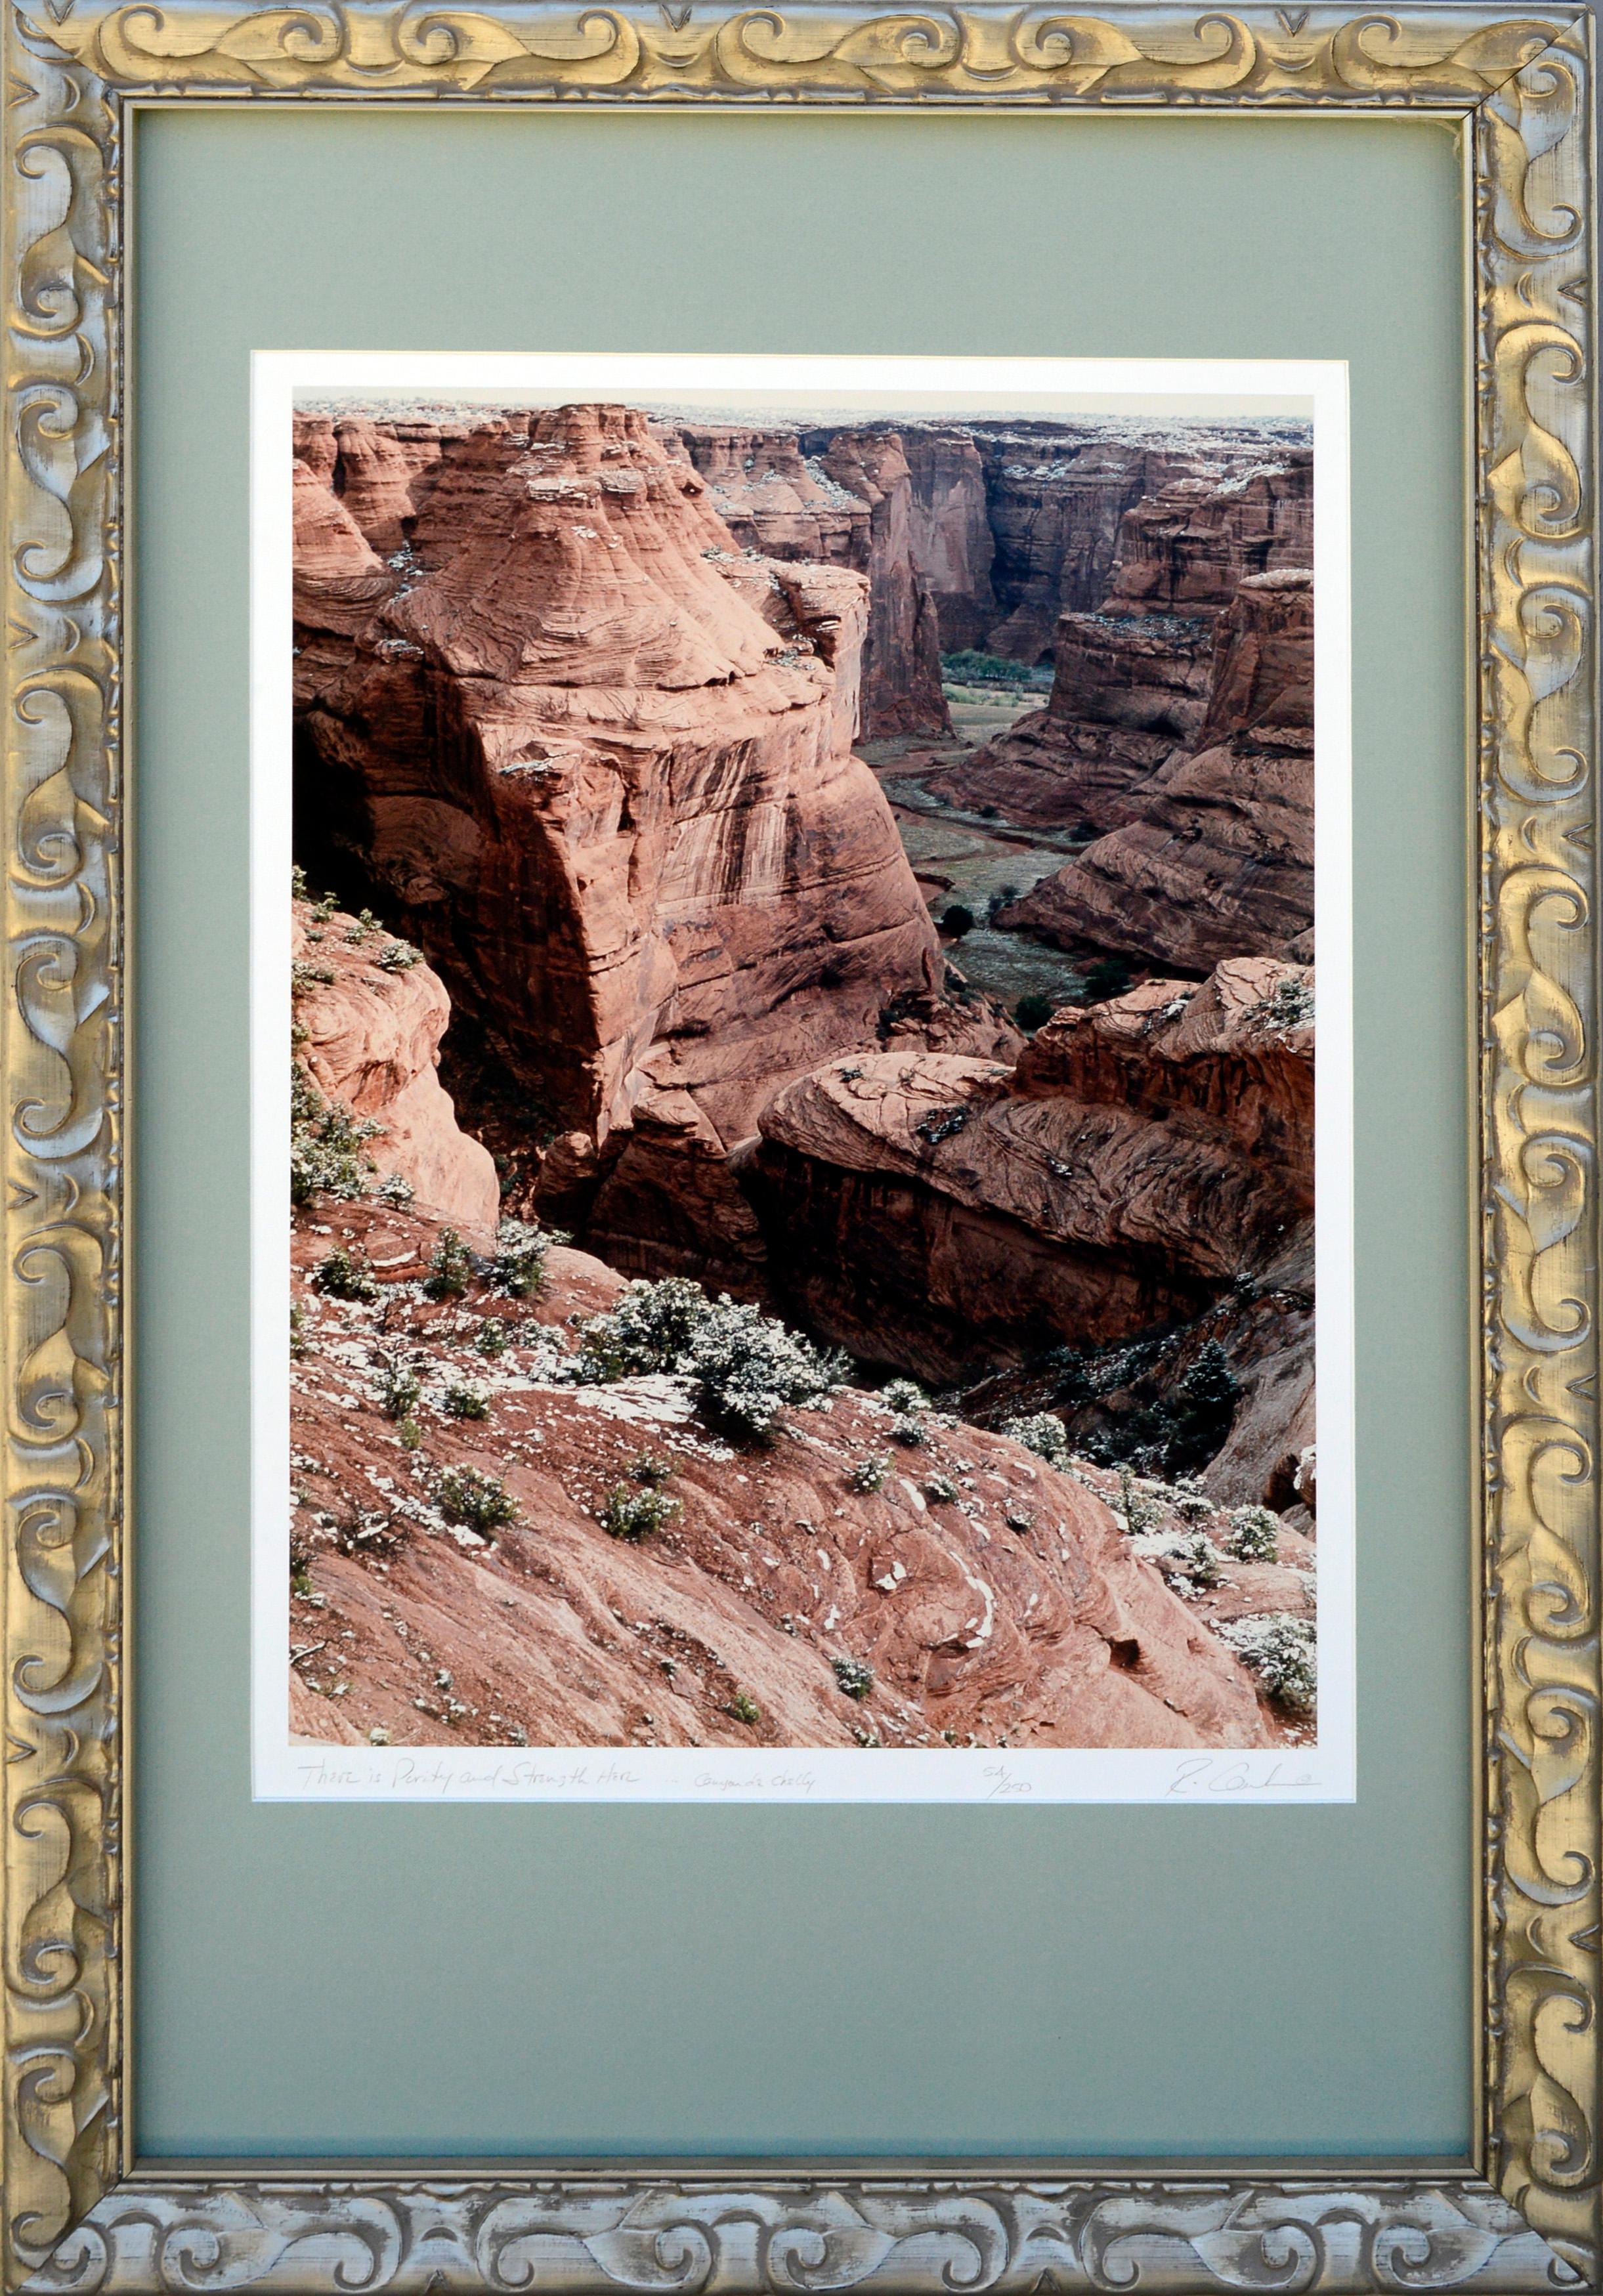 Rick Canham Landscape Photograph - Canyon de Chelly, Arizona Desert Landscape - Limited Edition Color Photograph 